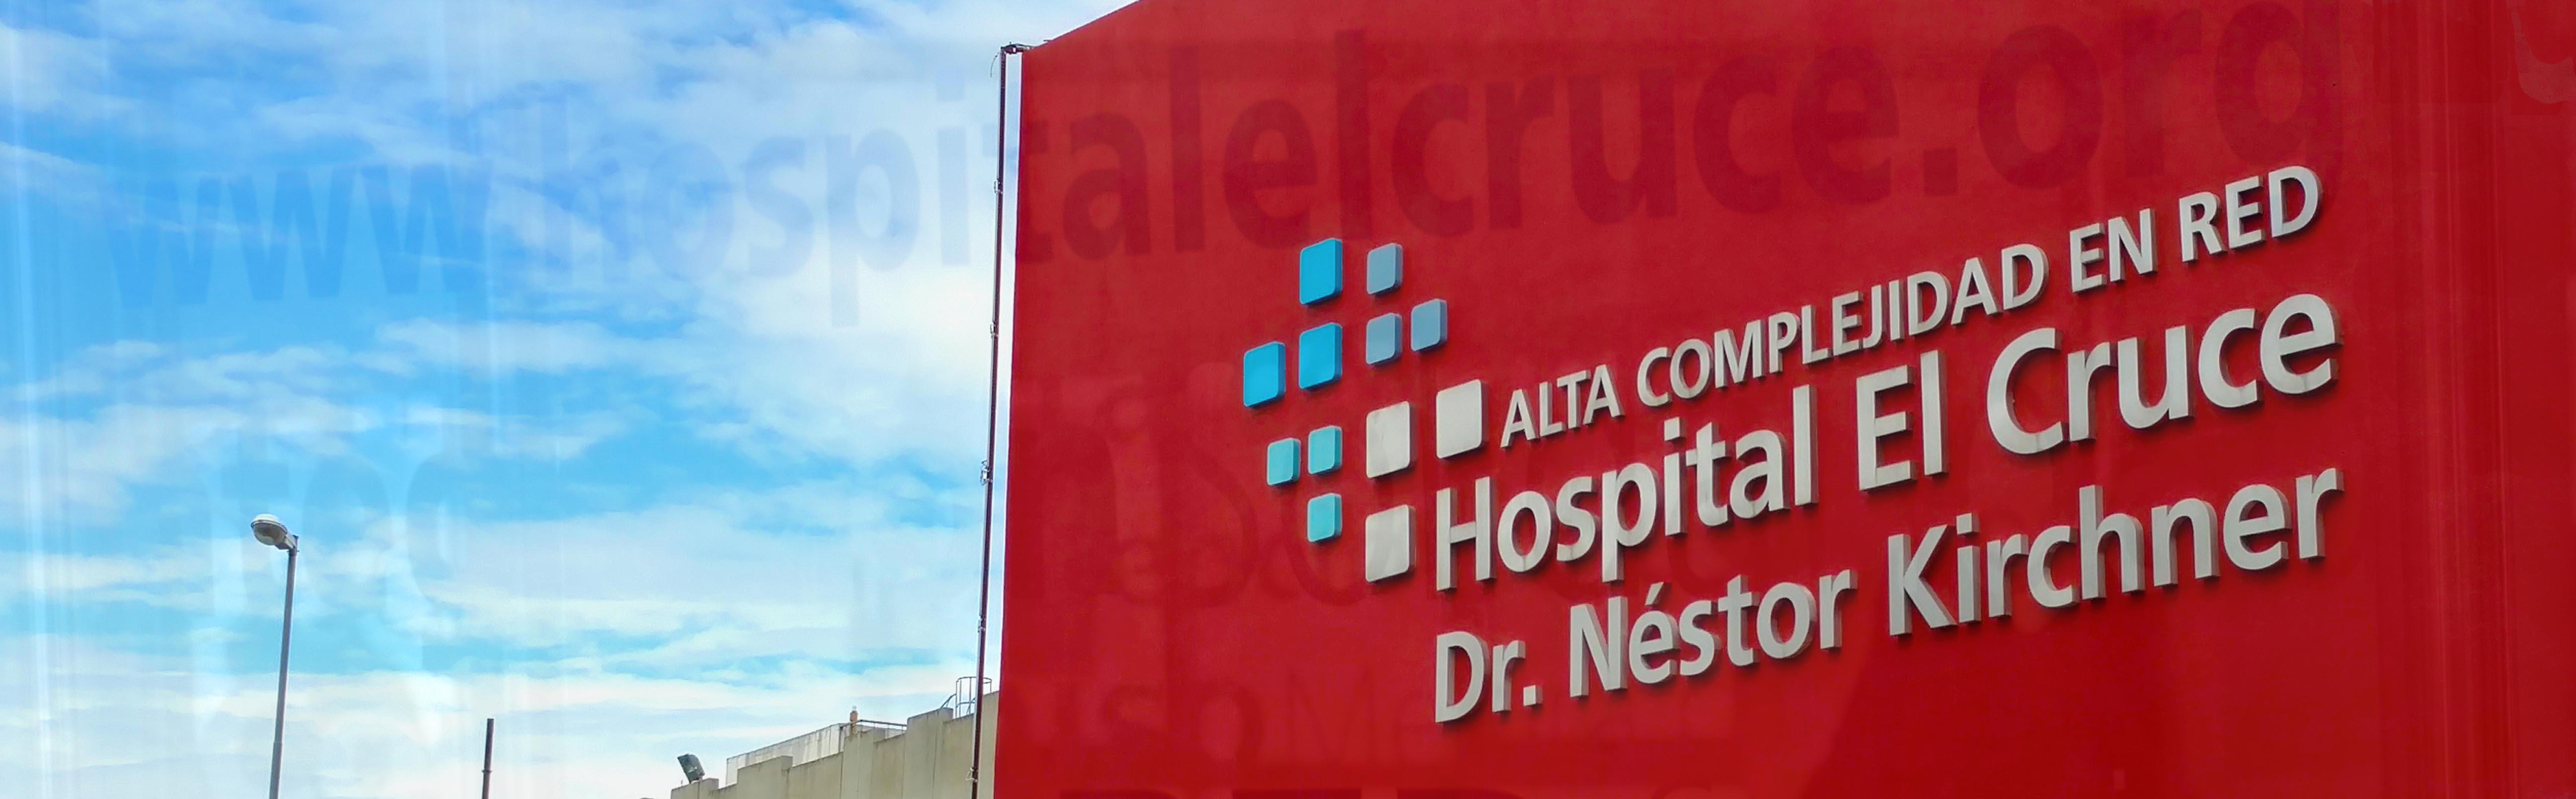 Hospital de Alta Complejidad El Cruce Nestor Kirchner - El Hospital El Cruce  renueva su equipamiento tecnológico